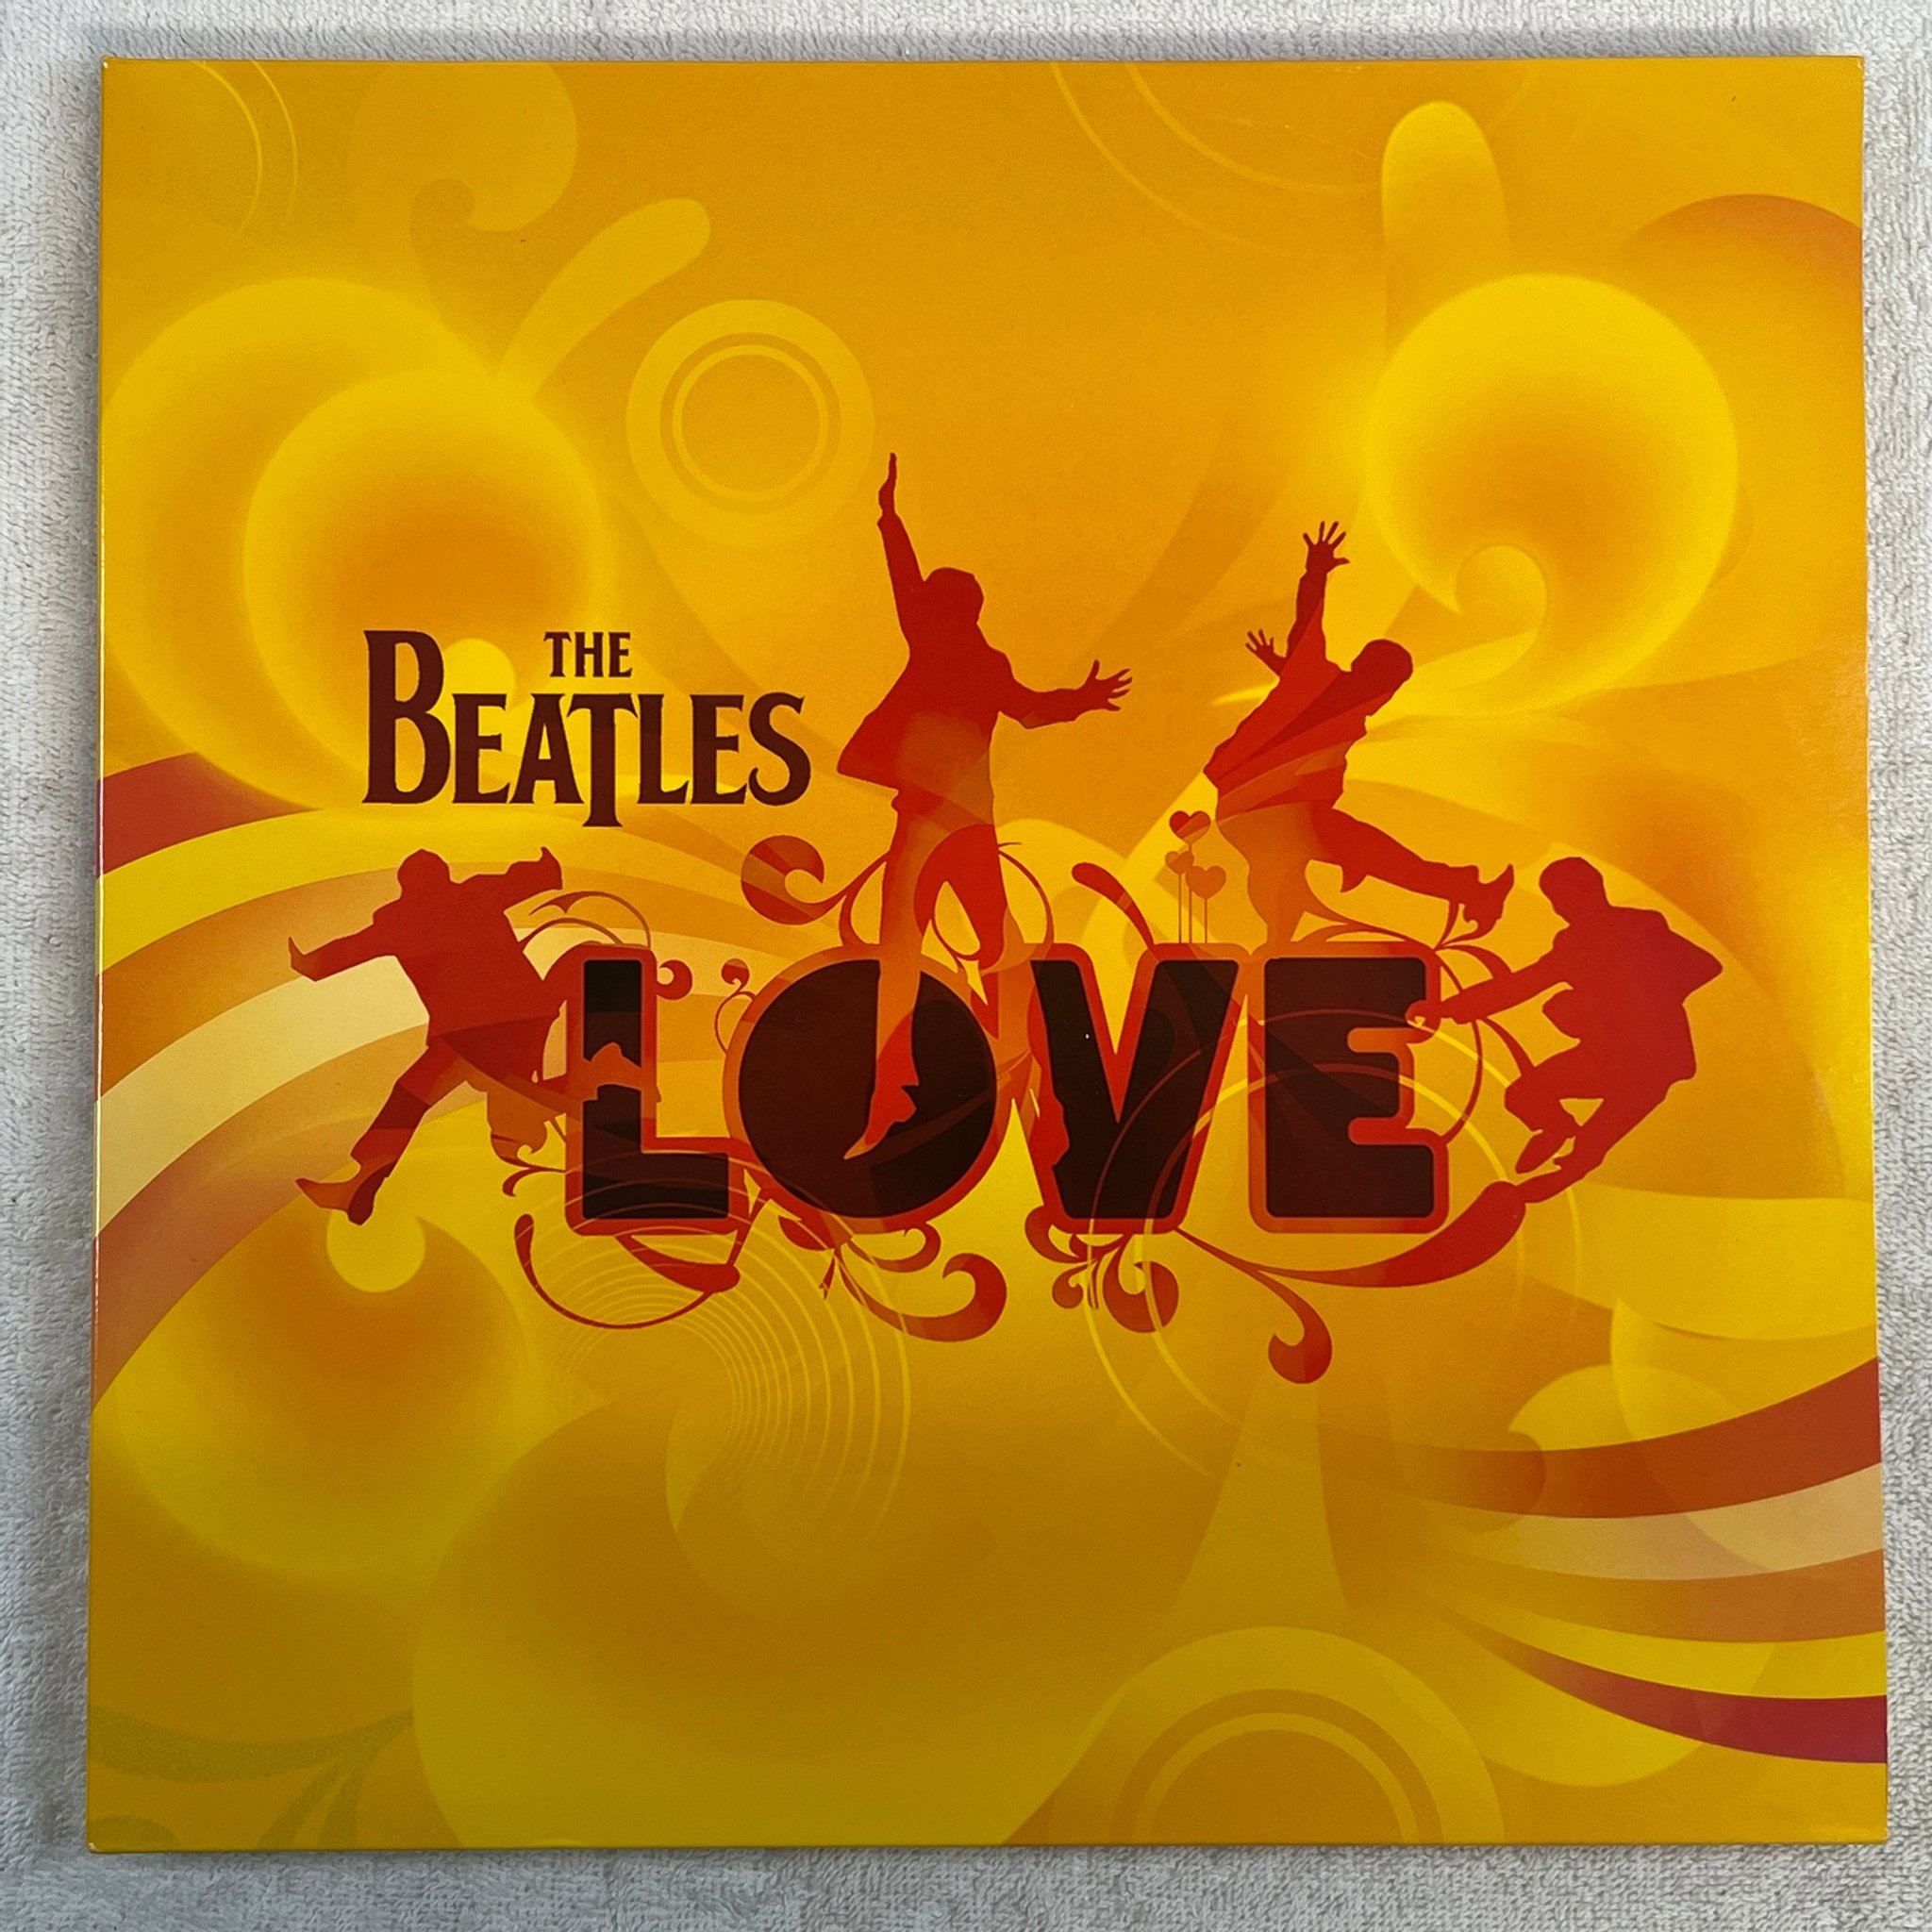 Omslagsbild för skivan THE BEATLES love 2xLP 2007 APPLE 0946 379 808 11